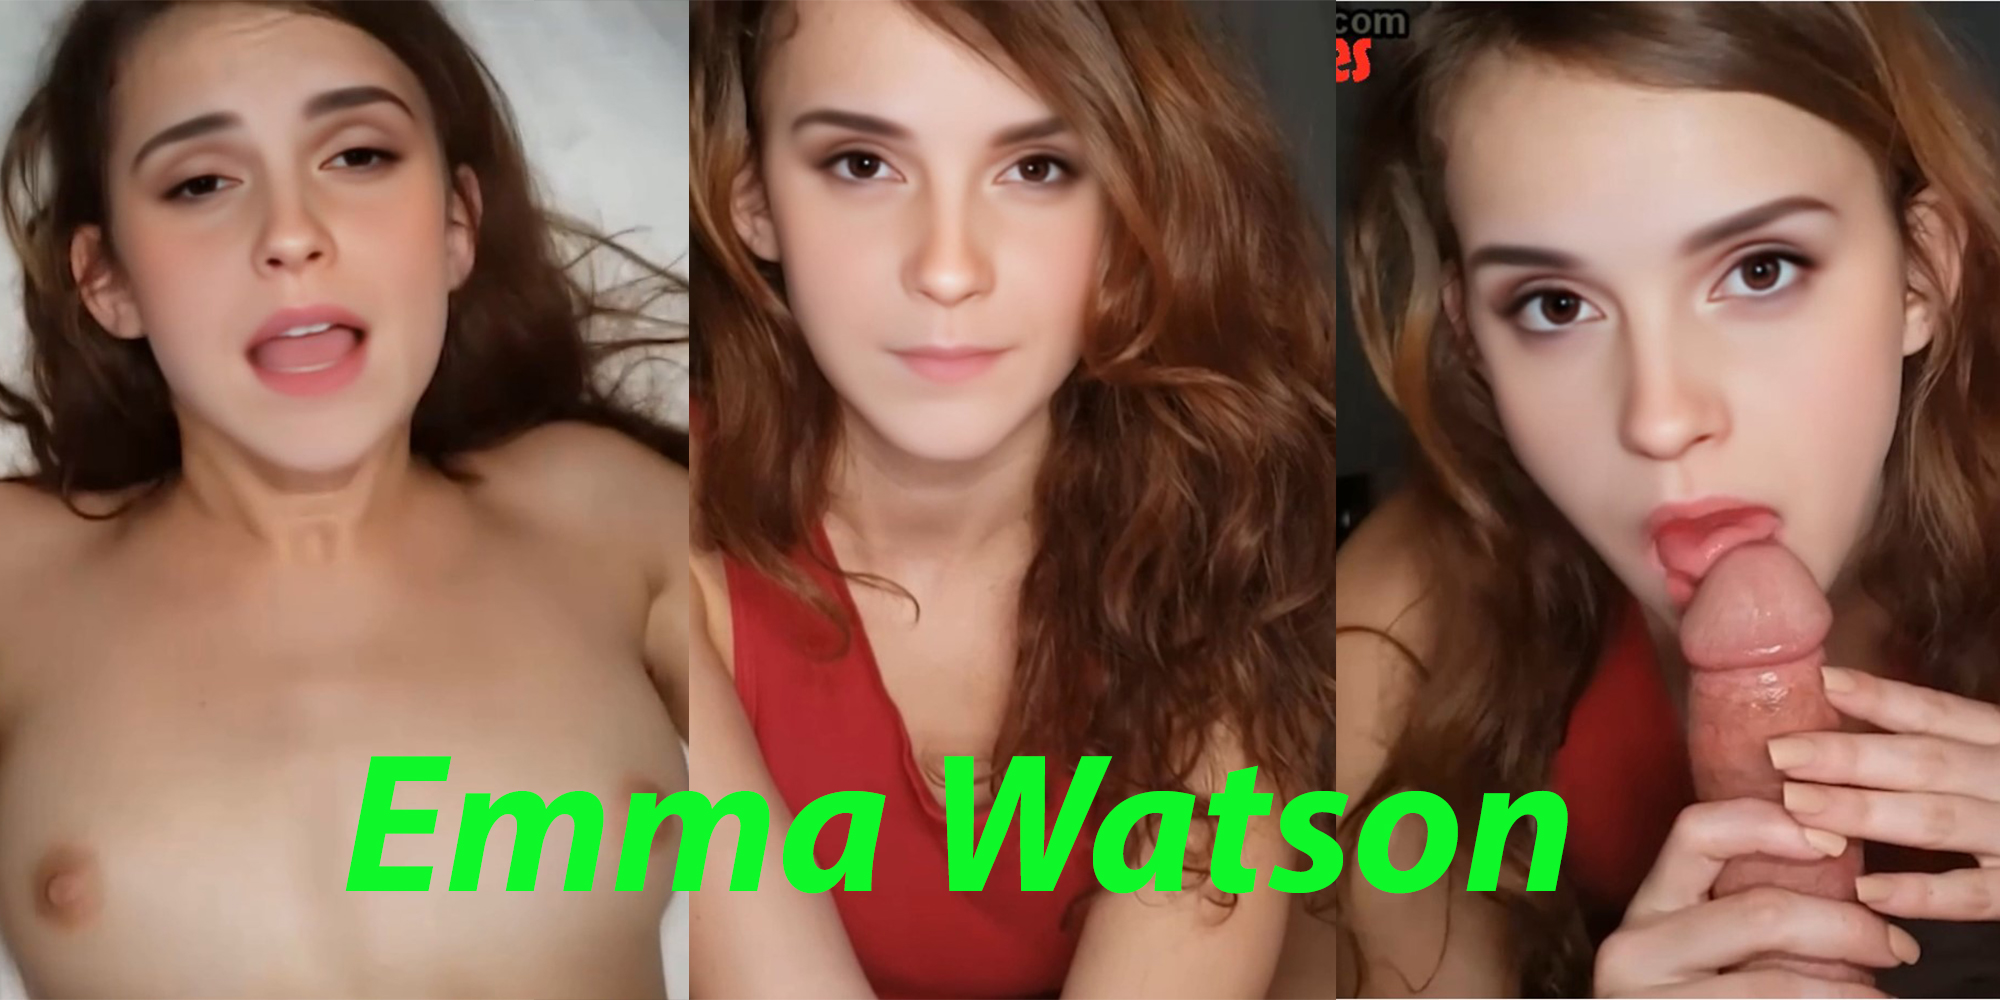 Emma Watson sleeps with you